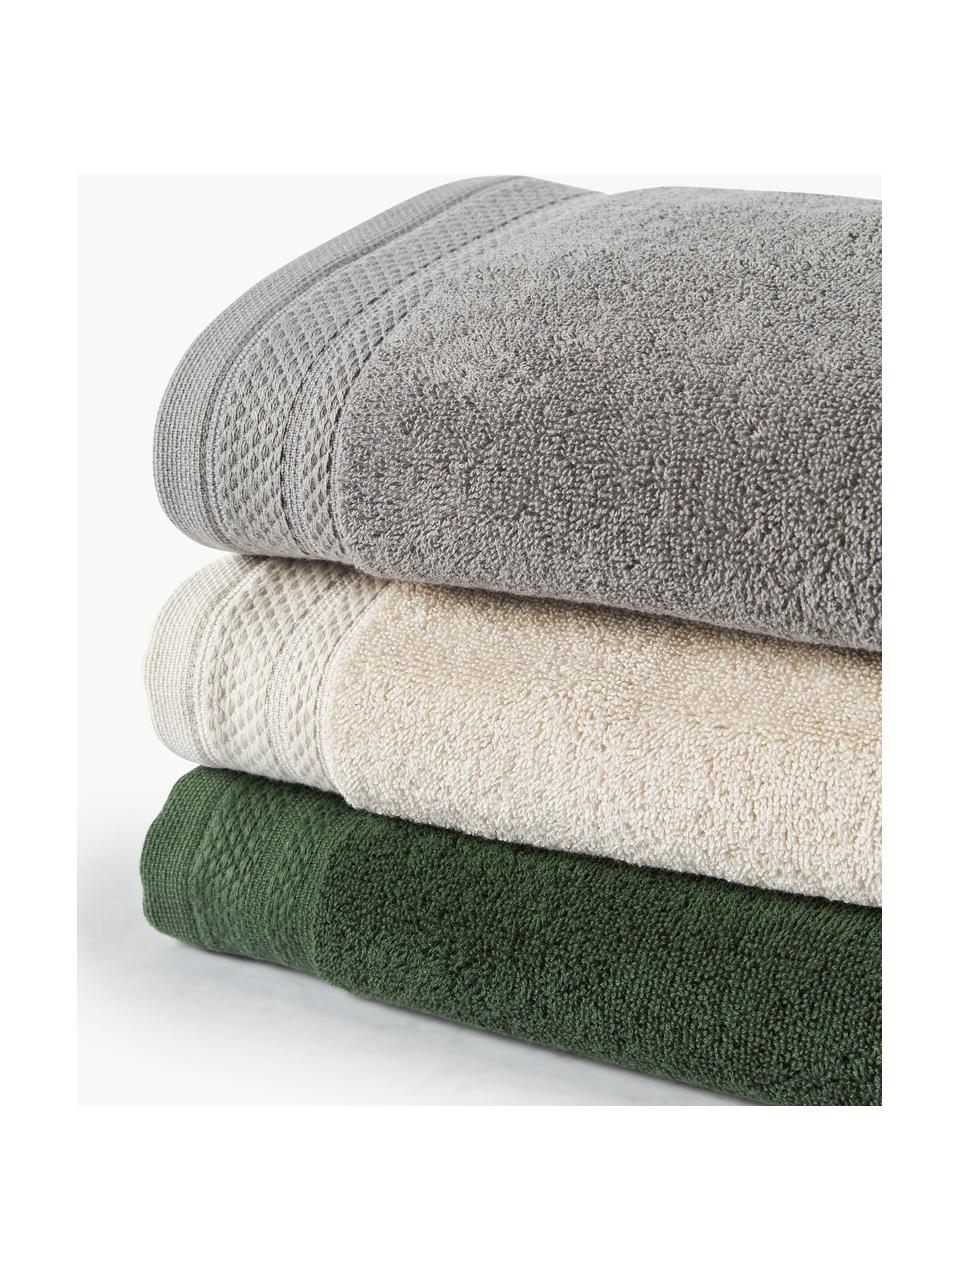 Komplet ręczników z bawełny organicznej Premium, różne rozmiary, Jasny beżowy, 3 elem. (ręcznik dla gości, ręcznik do rąk, ręcznik kąpielowy)